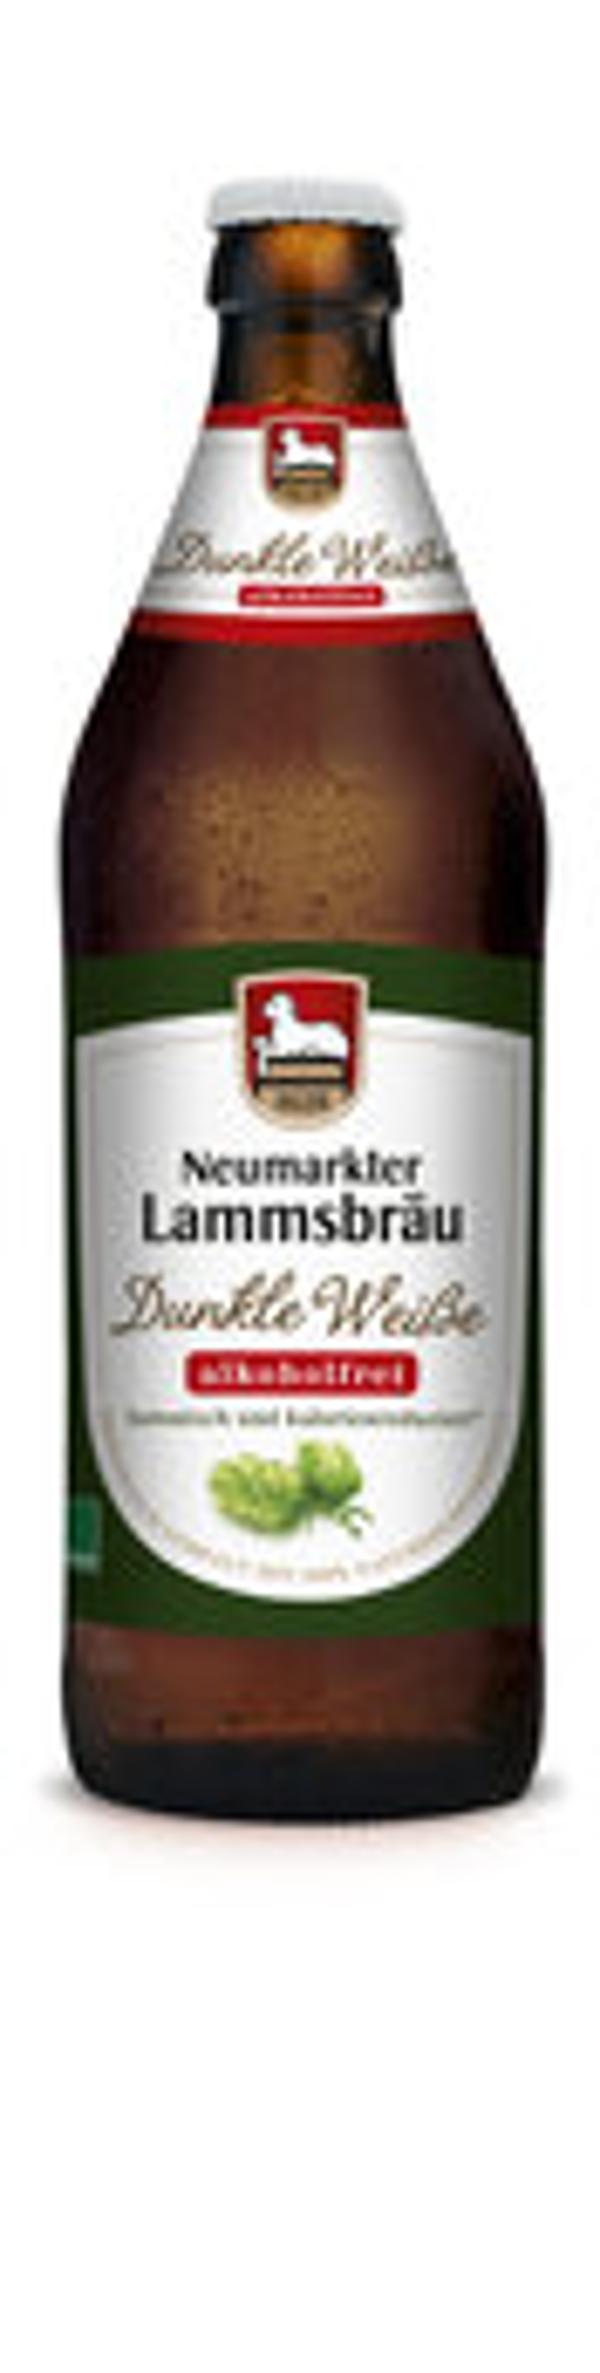 Produktfoto zu Lammsbräu Dunkle Weiße alkoholfrei 0,5l